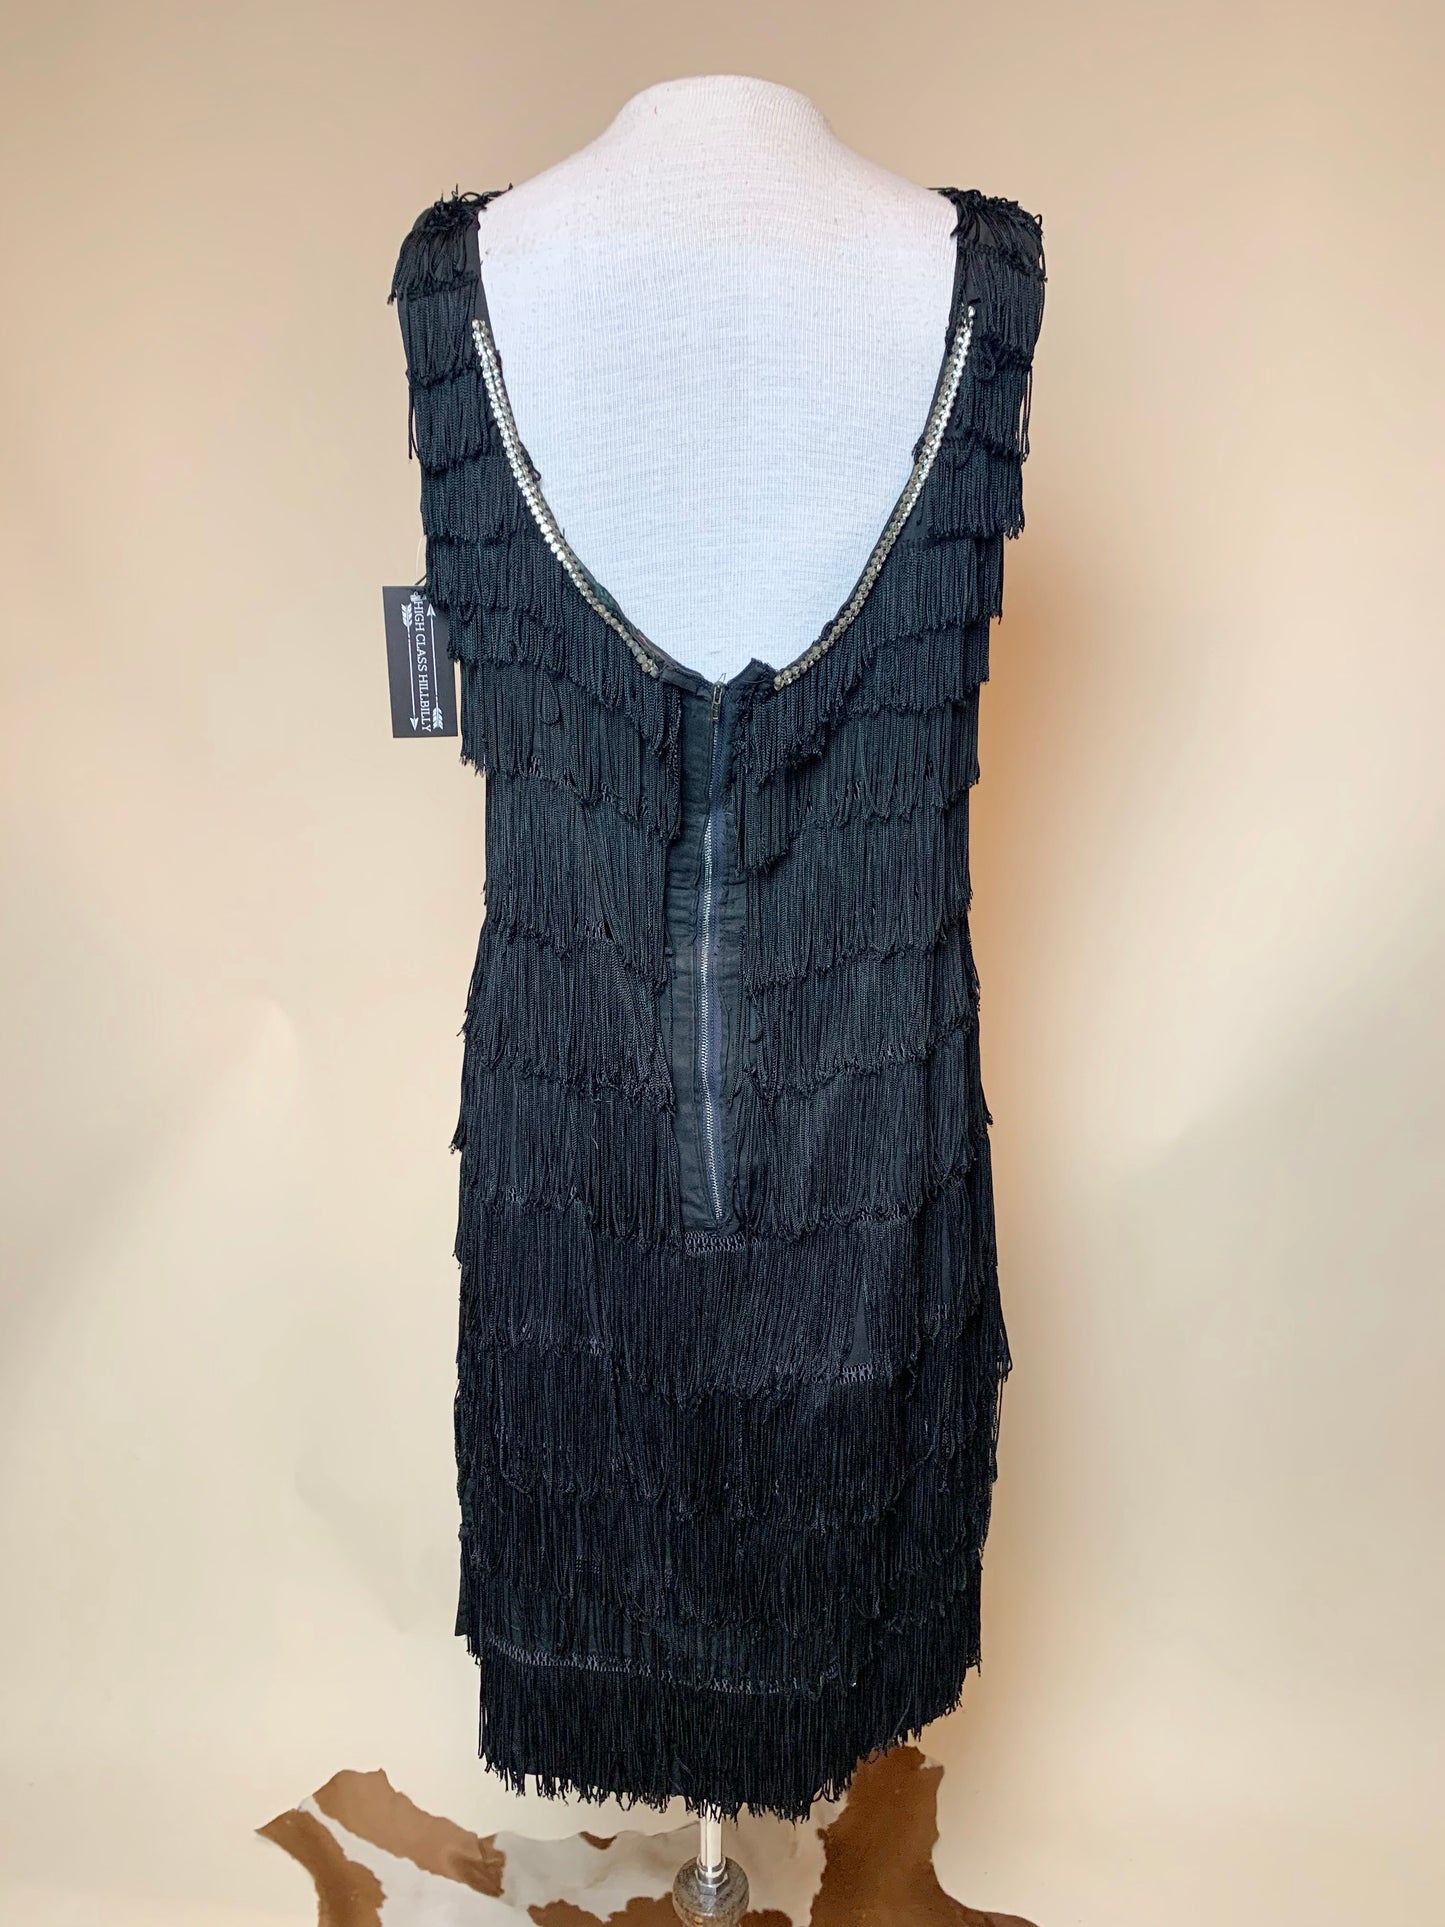 Vintage Black Fringe Bedazzled Flapper Dress (L)